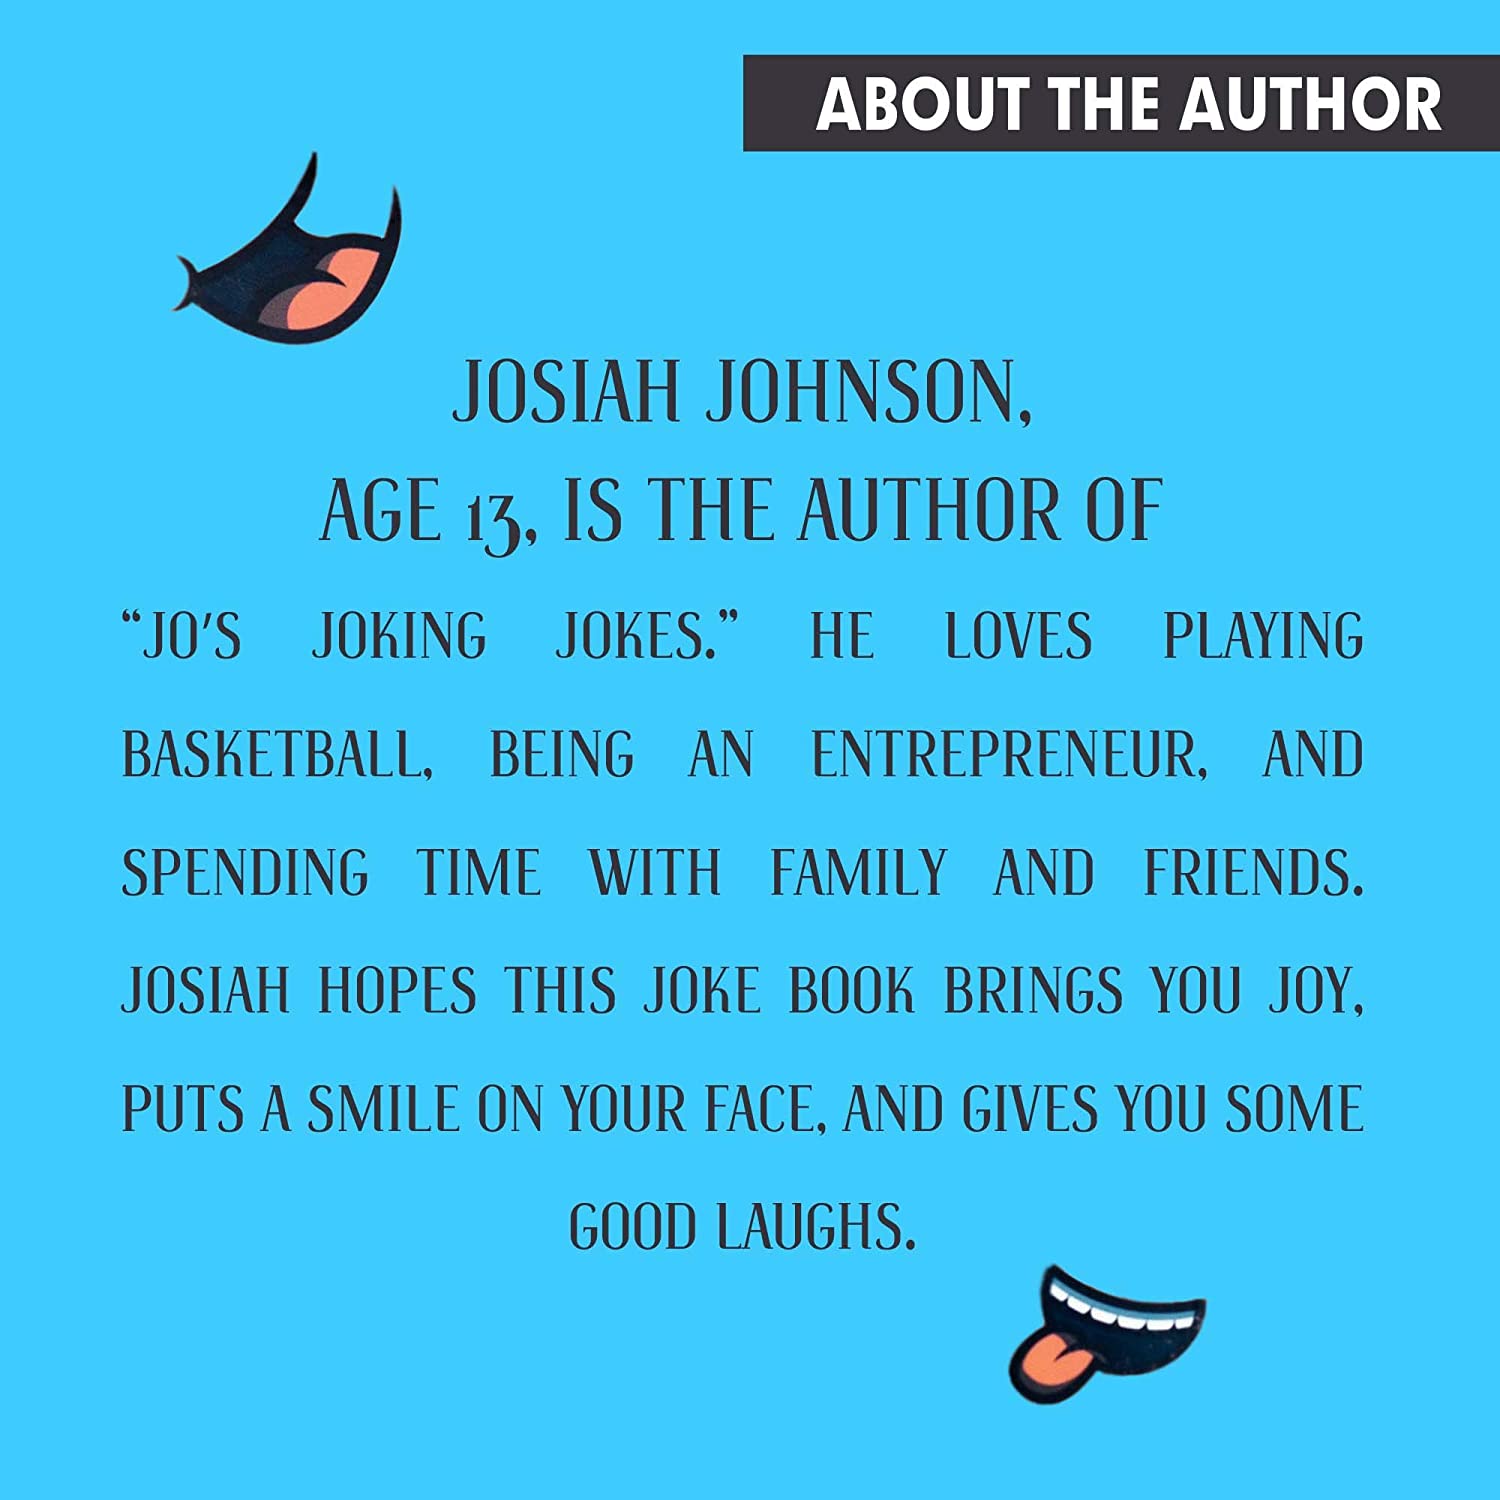 Jo's Jokin' Jokes Book for Kids by Kids Volume 2 - Rapid Brands